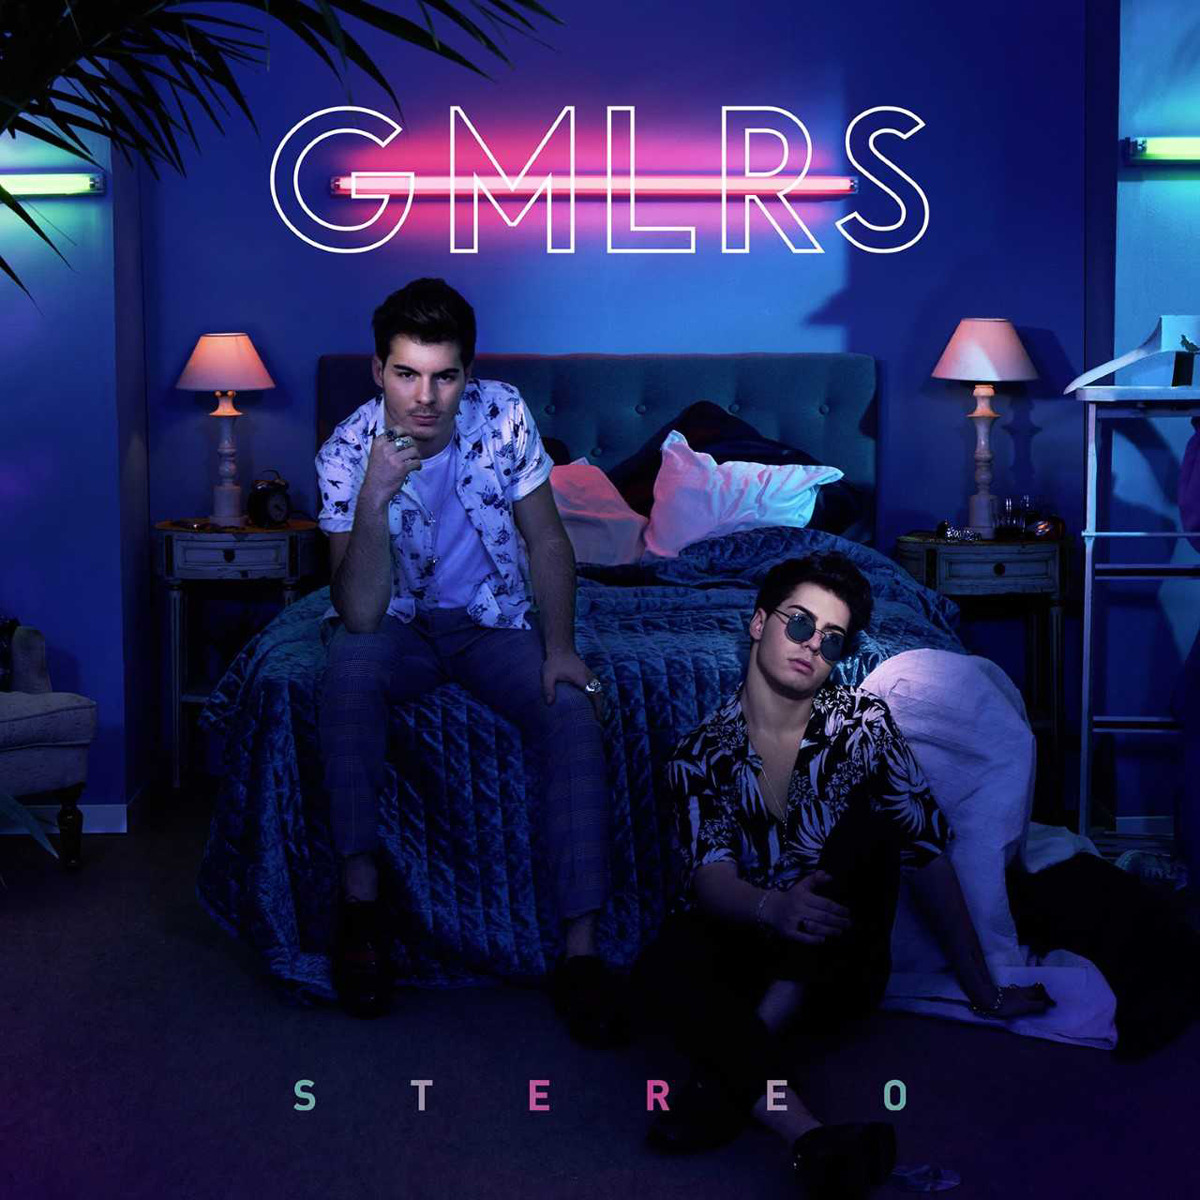 ‘Stereo’ es el nuevo disco de GMLRS